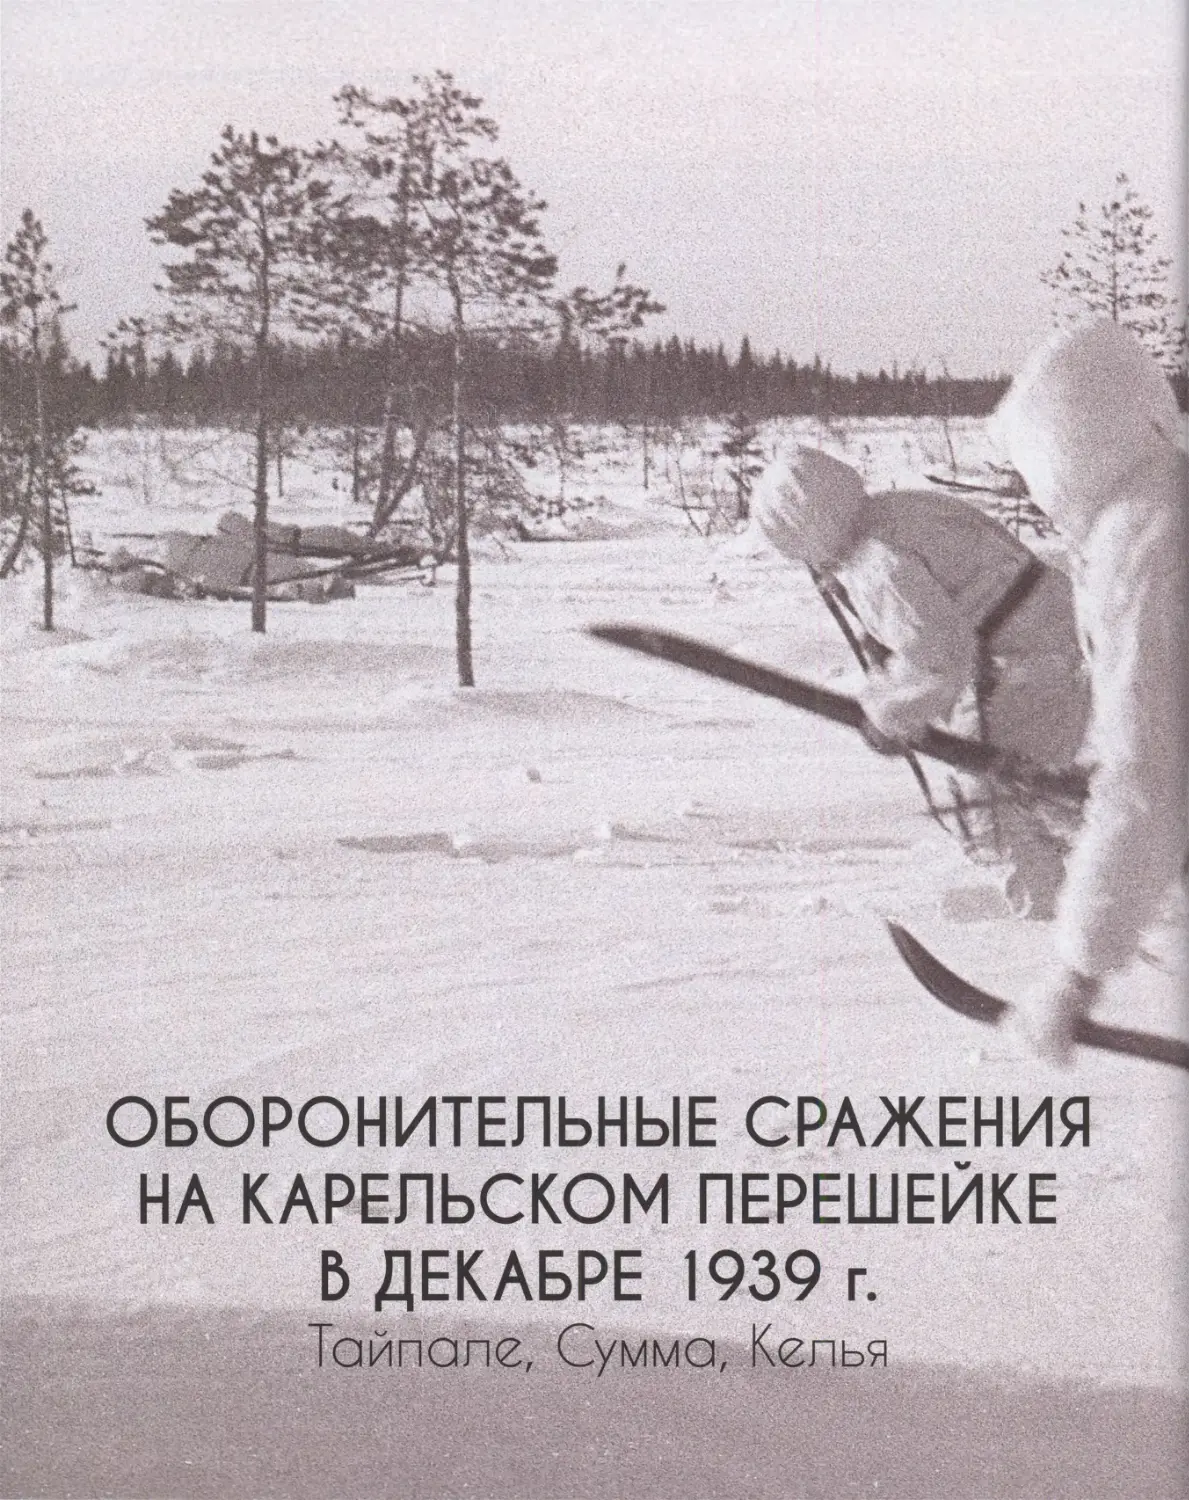 Оборонительные сражения на Карельском перешейке в декабре 1939 г